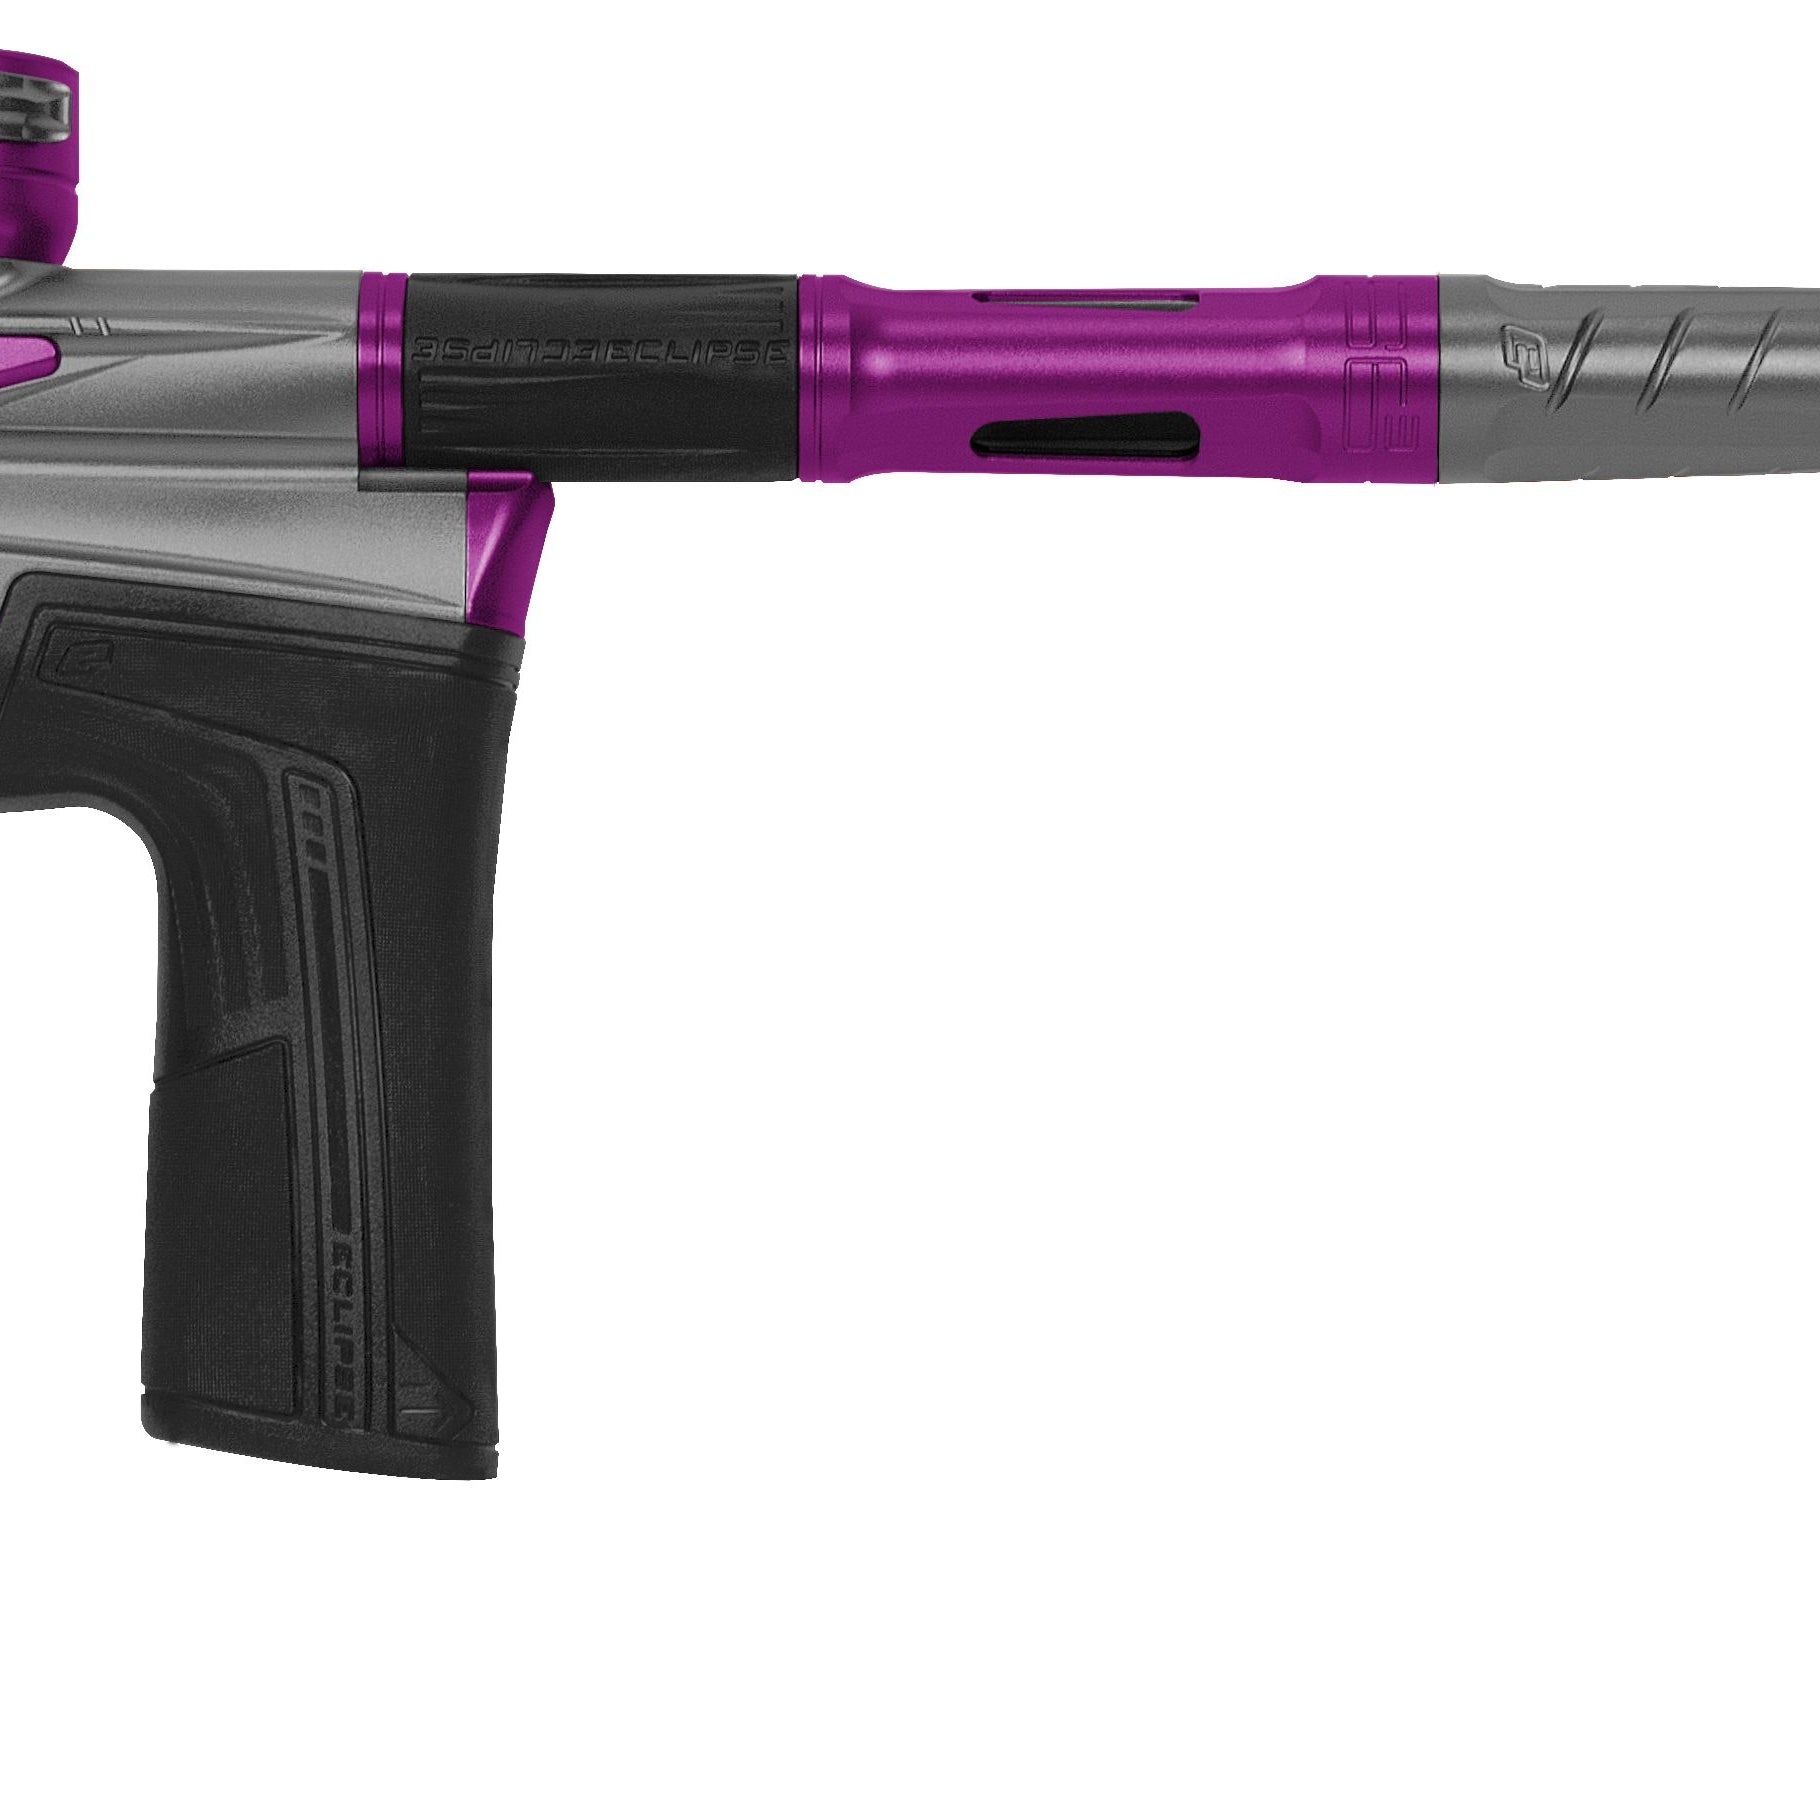 Planet Eclipse Ego LV2 Paintball Gun - Havoc (Dark Grey/Purple) *Pre-Order*